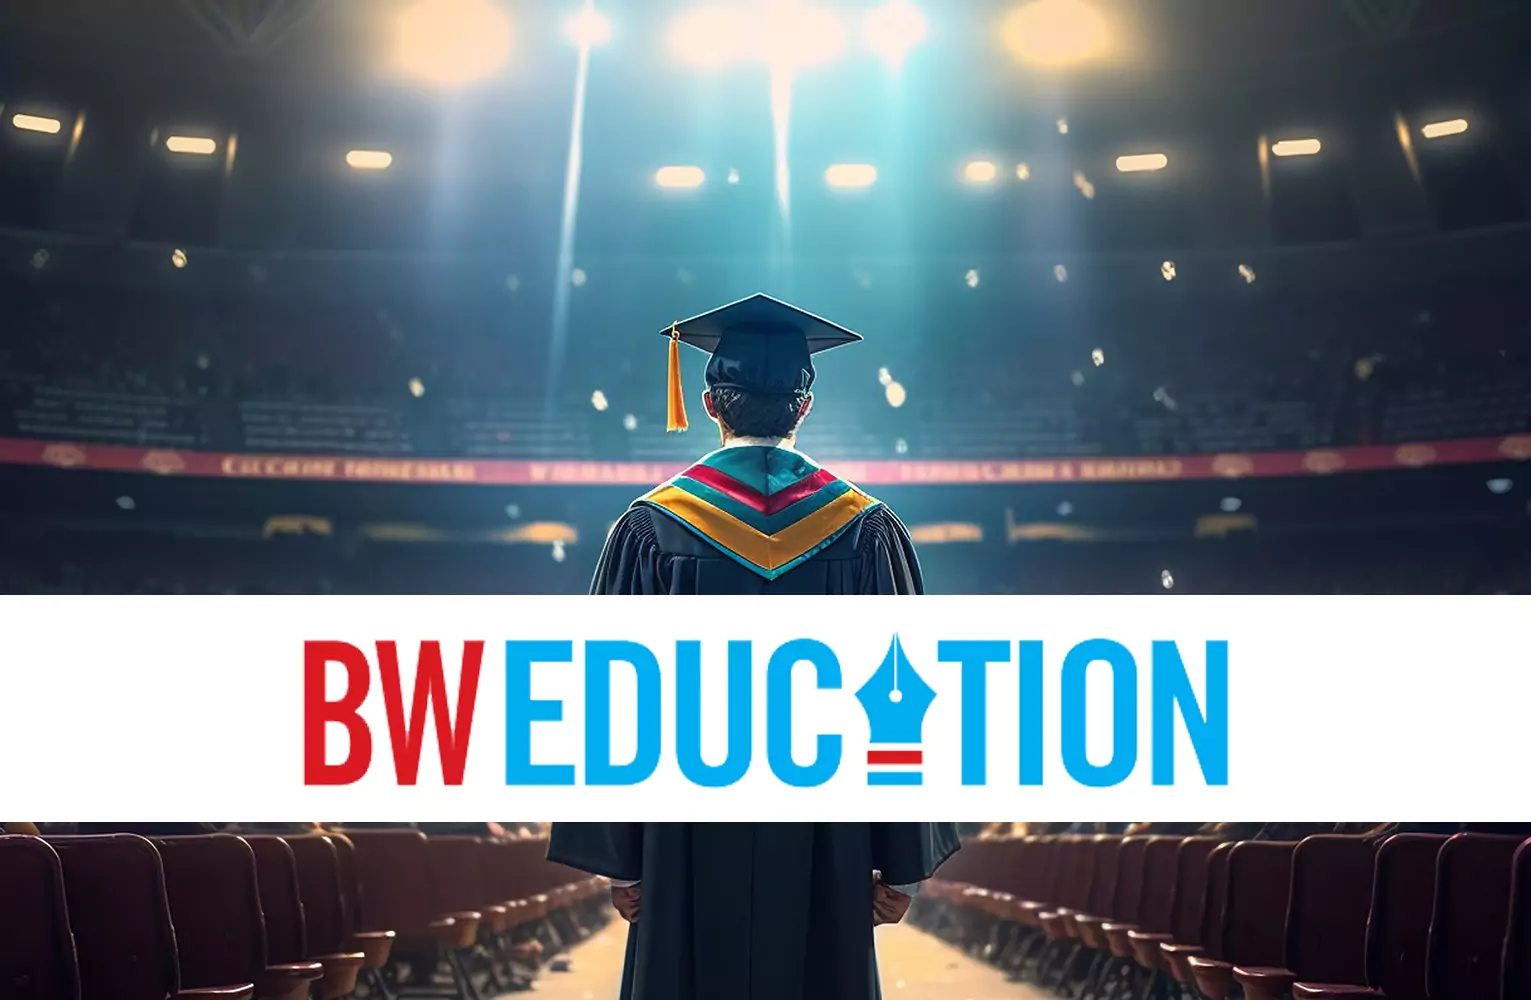 Bw Education